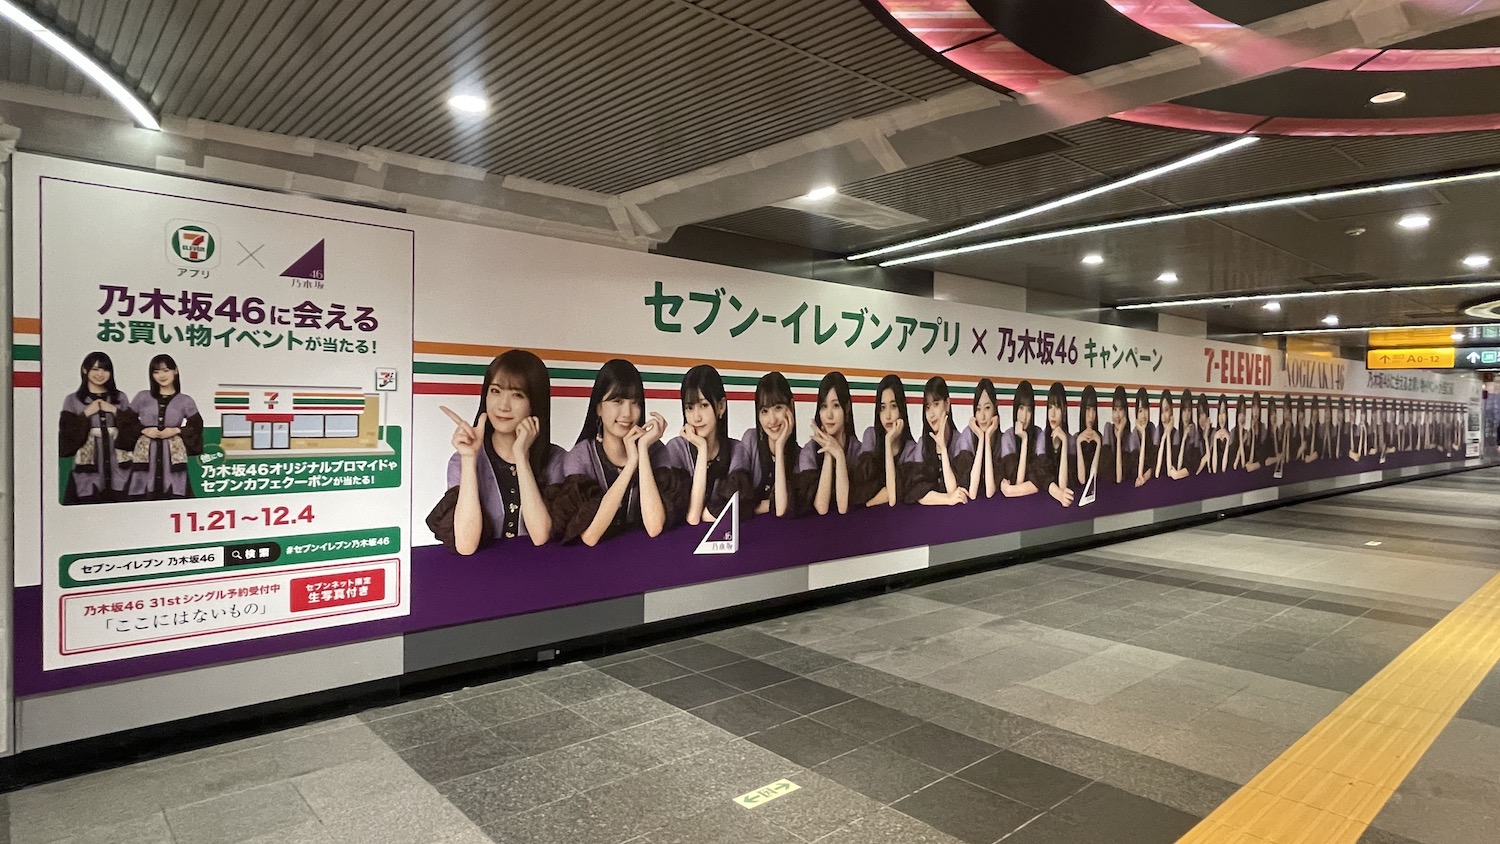 セブンイレブン×乃木坂46キャンペーン」を記念し、渋谷駅に乃木坂46